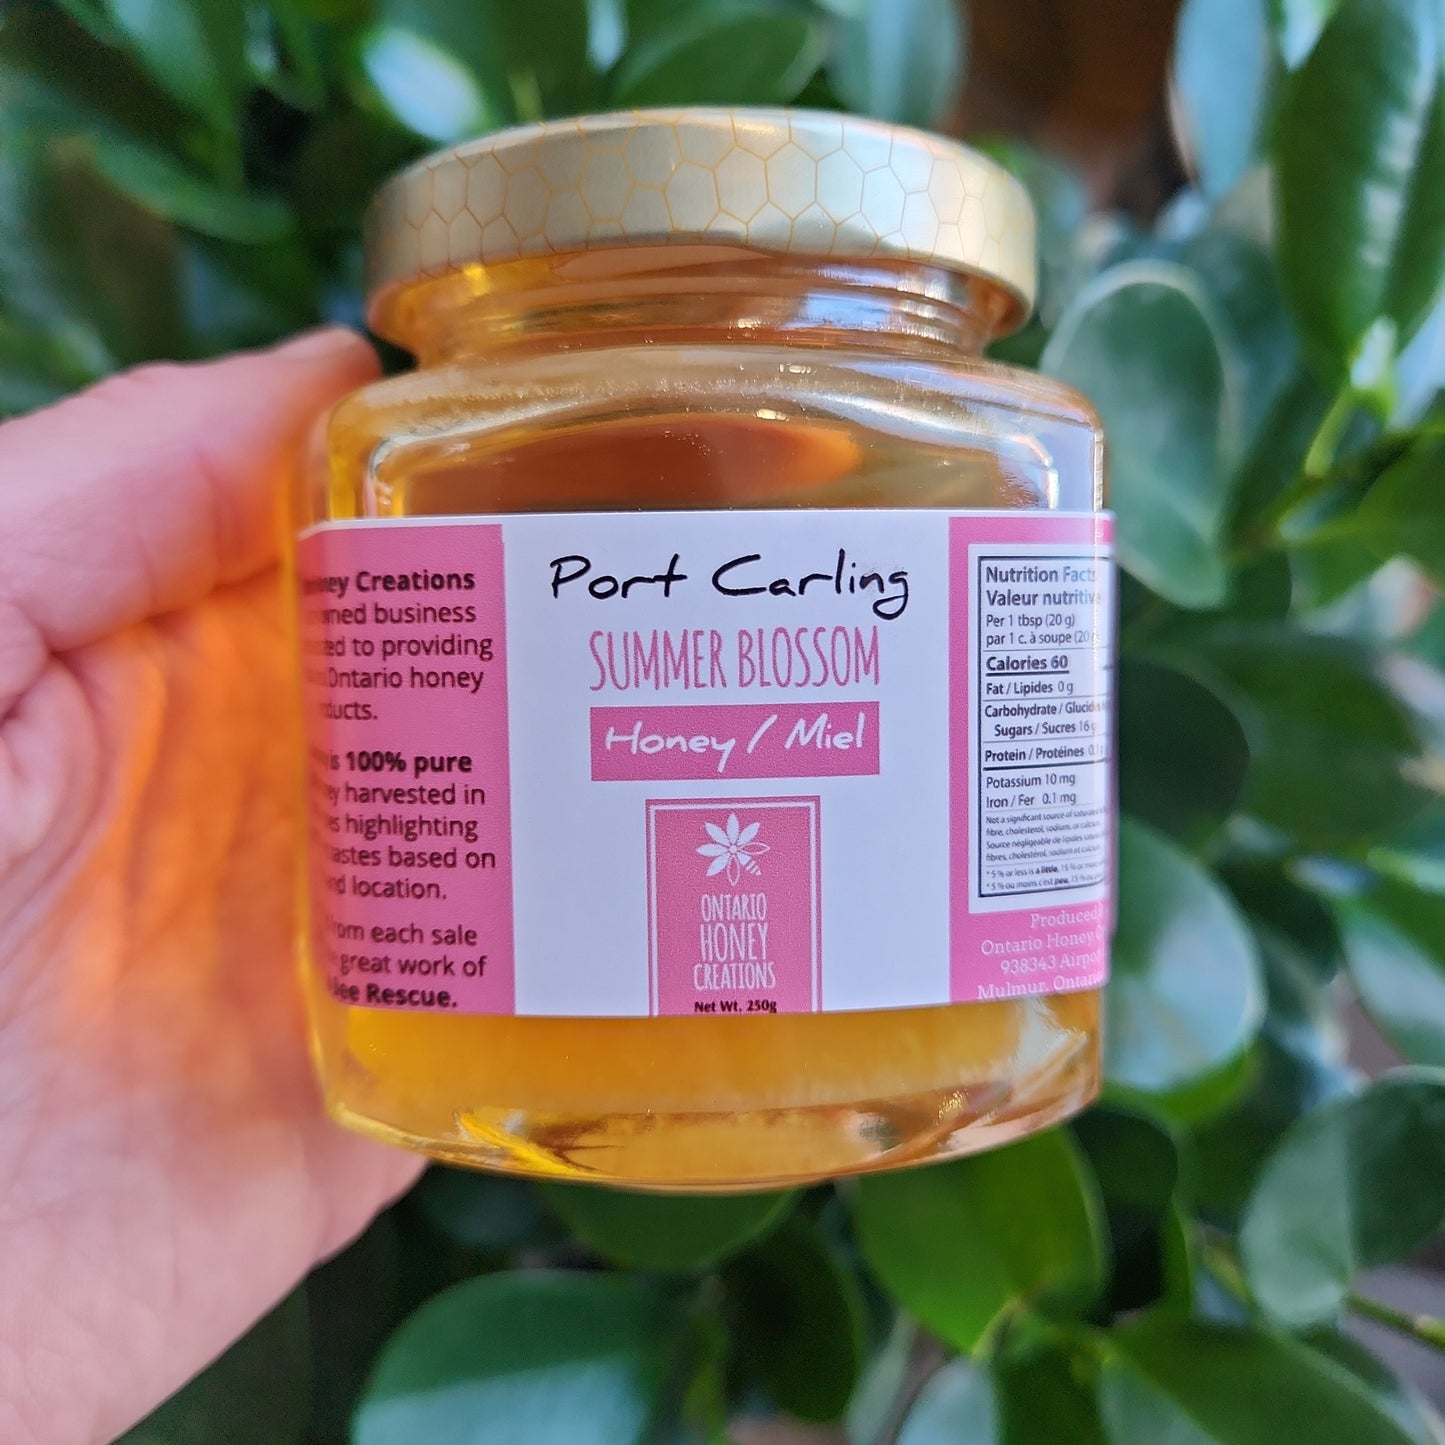 Port Carling Summer Blossom Honey